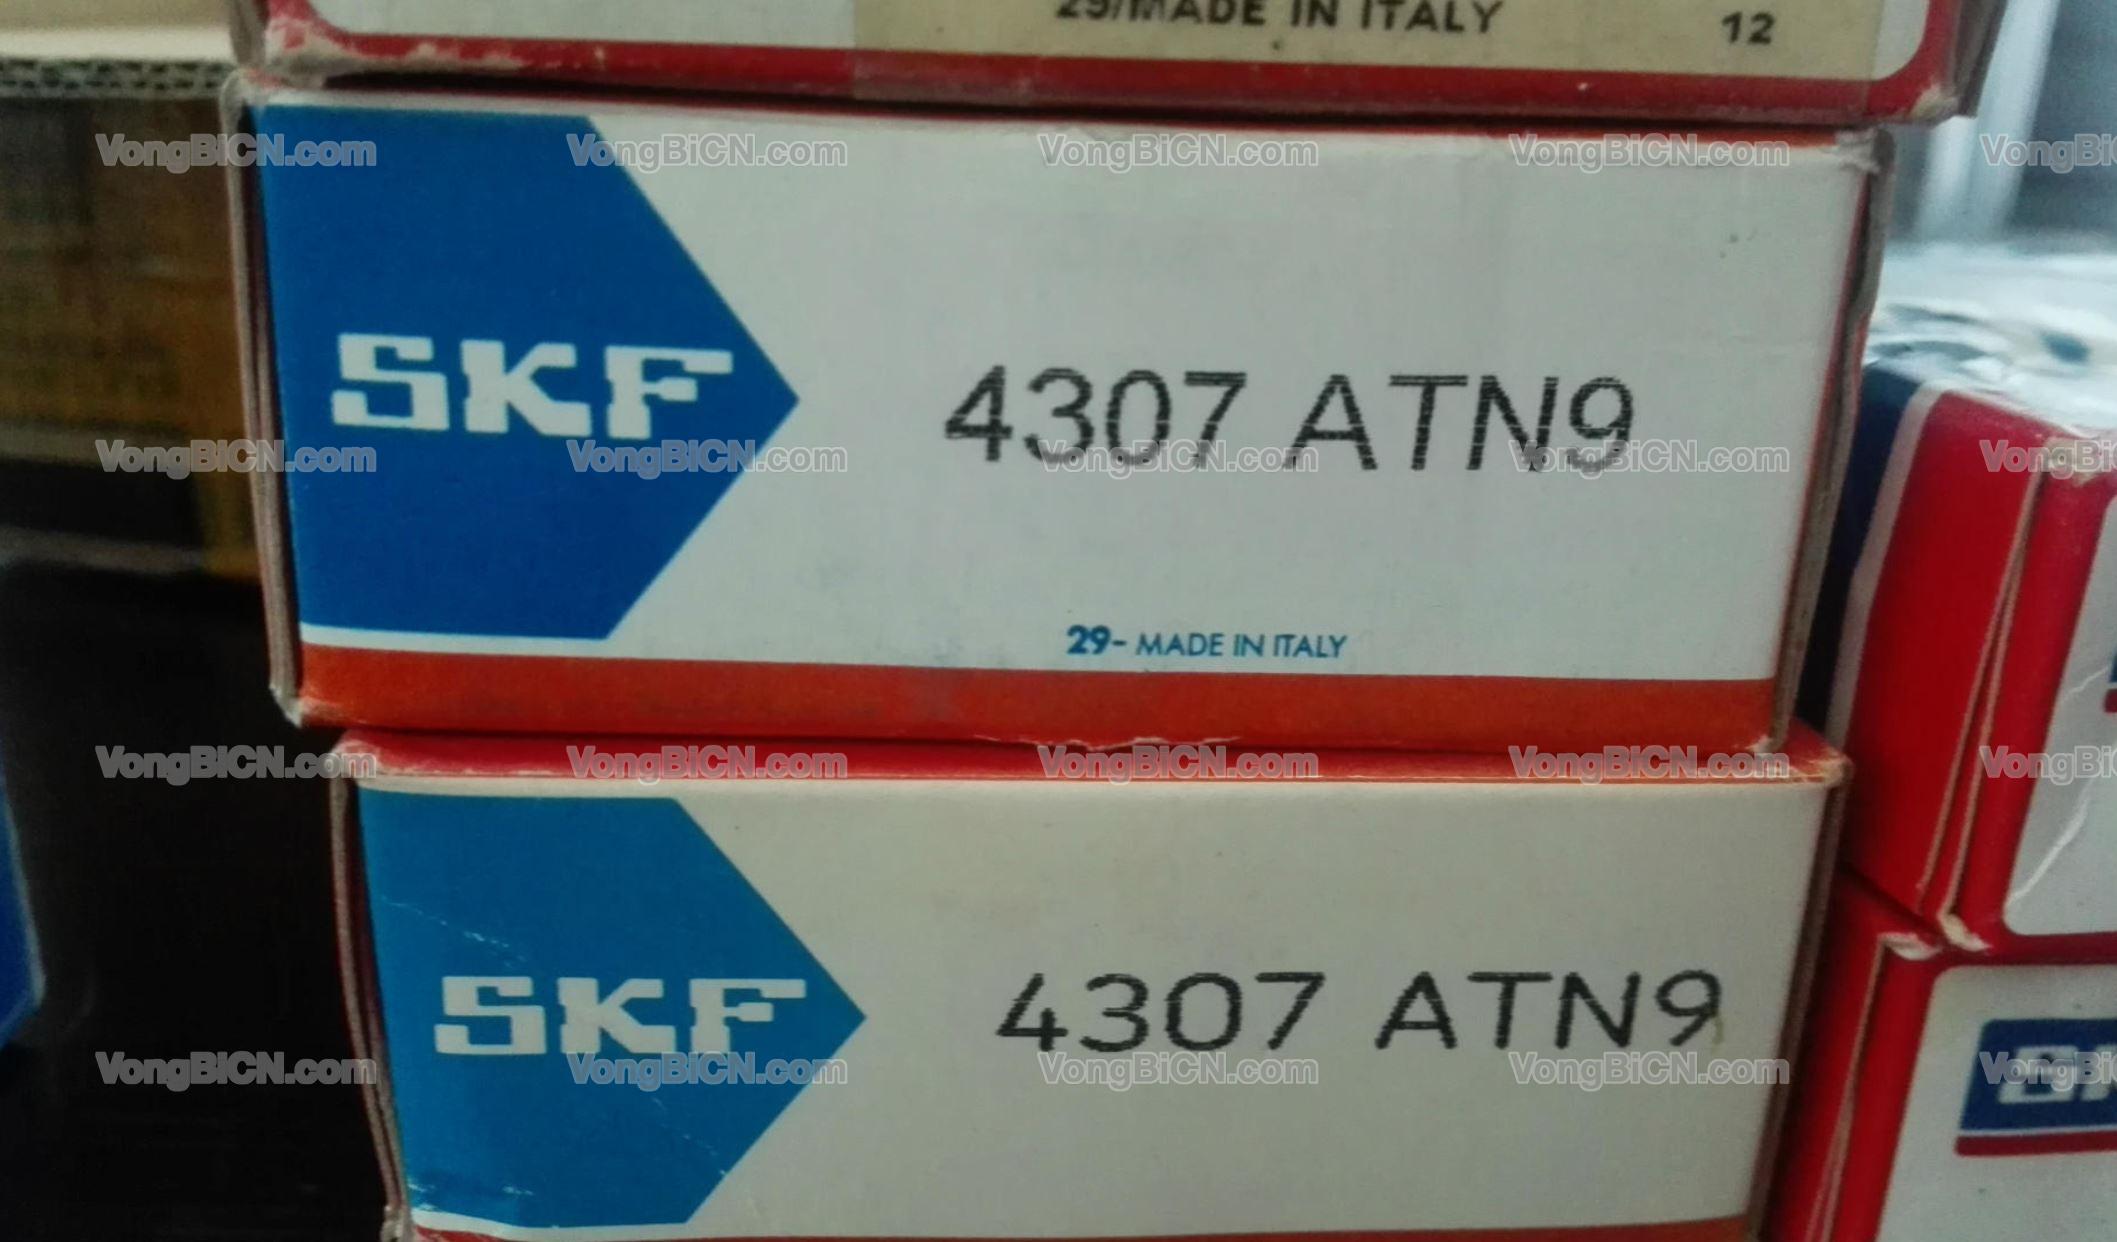 SKF 4307ATN9